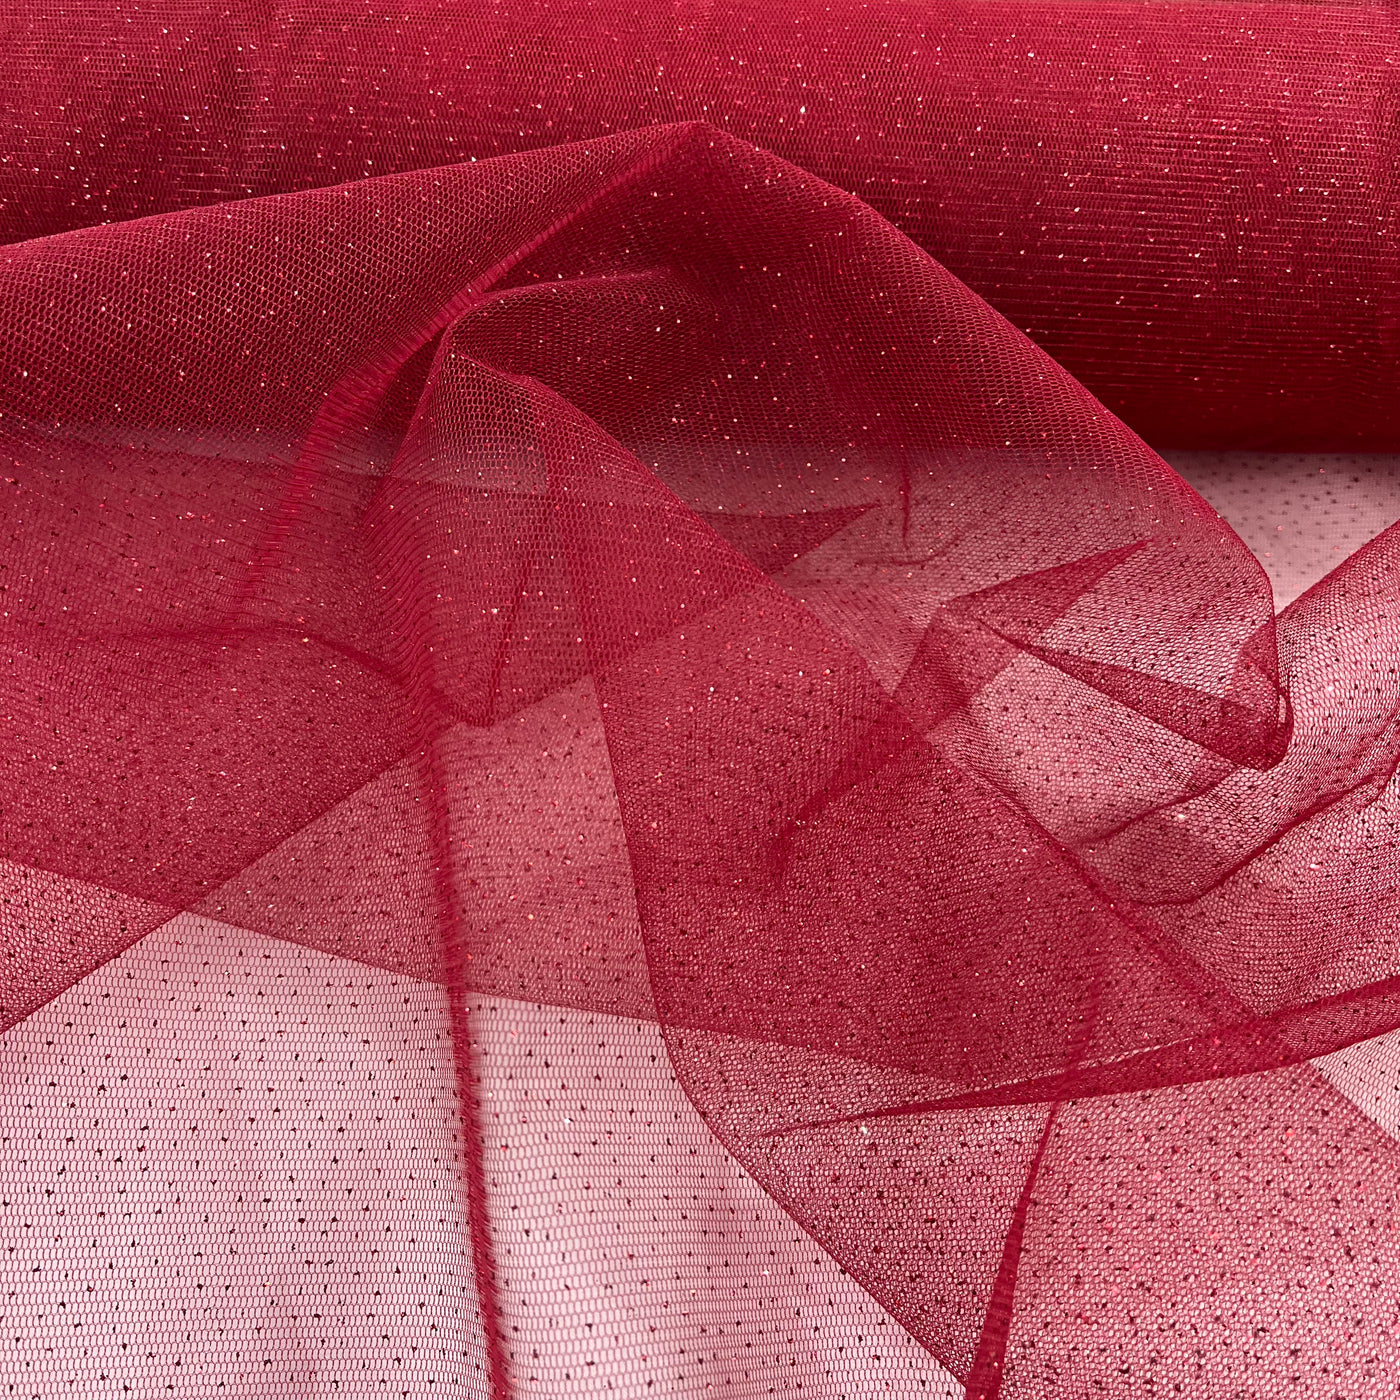 Glitter Mesh Fabric | Lace USA